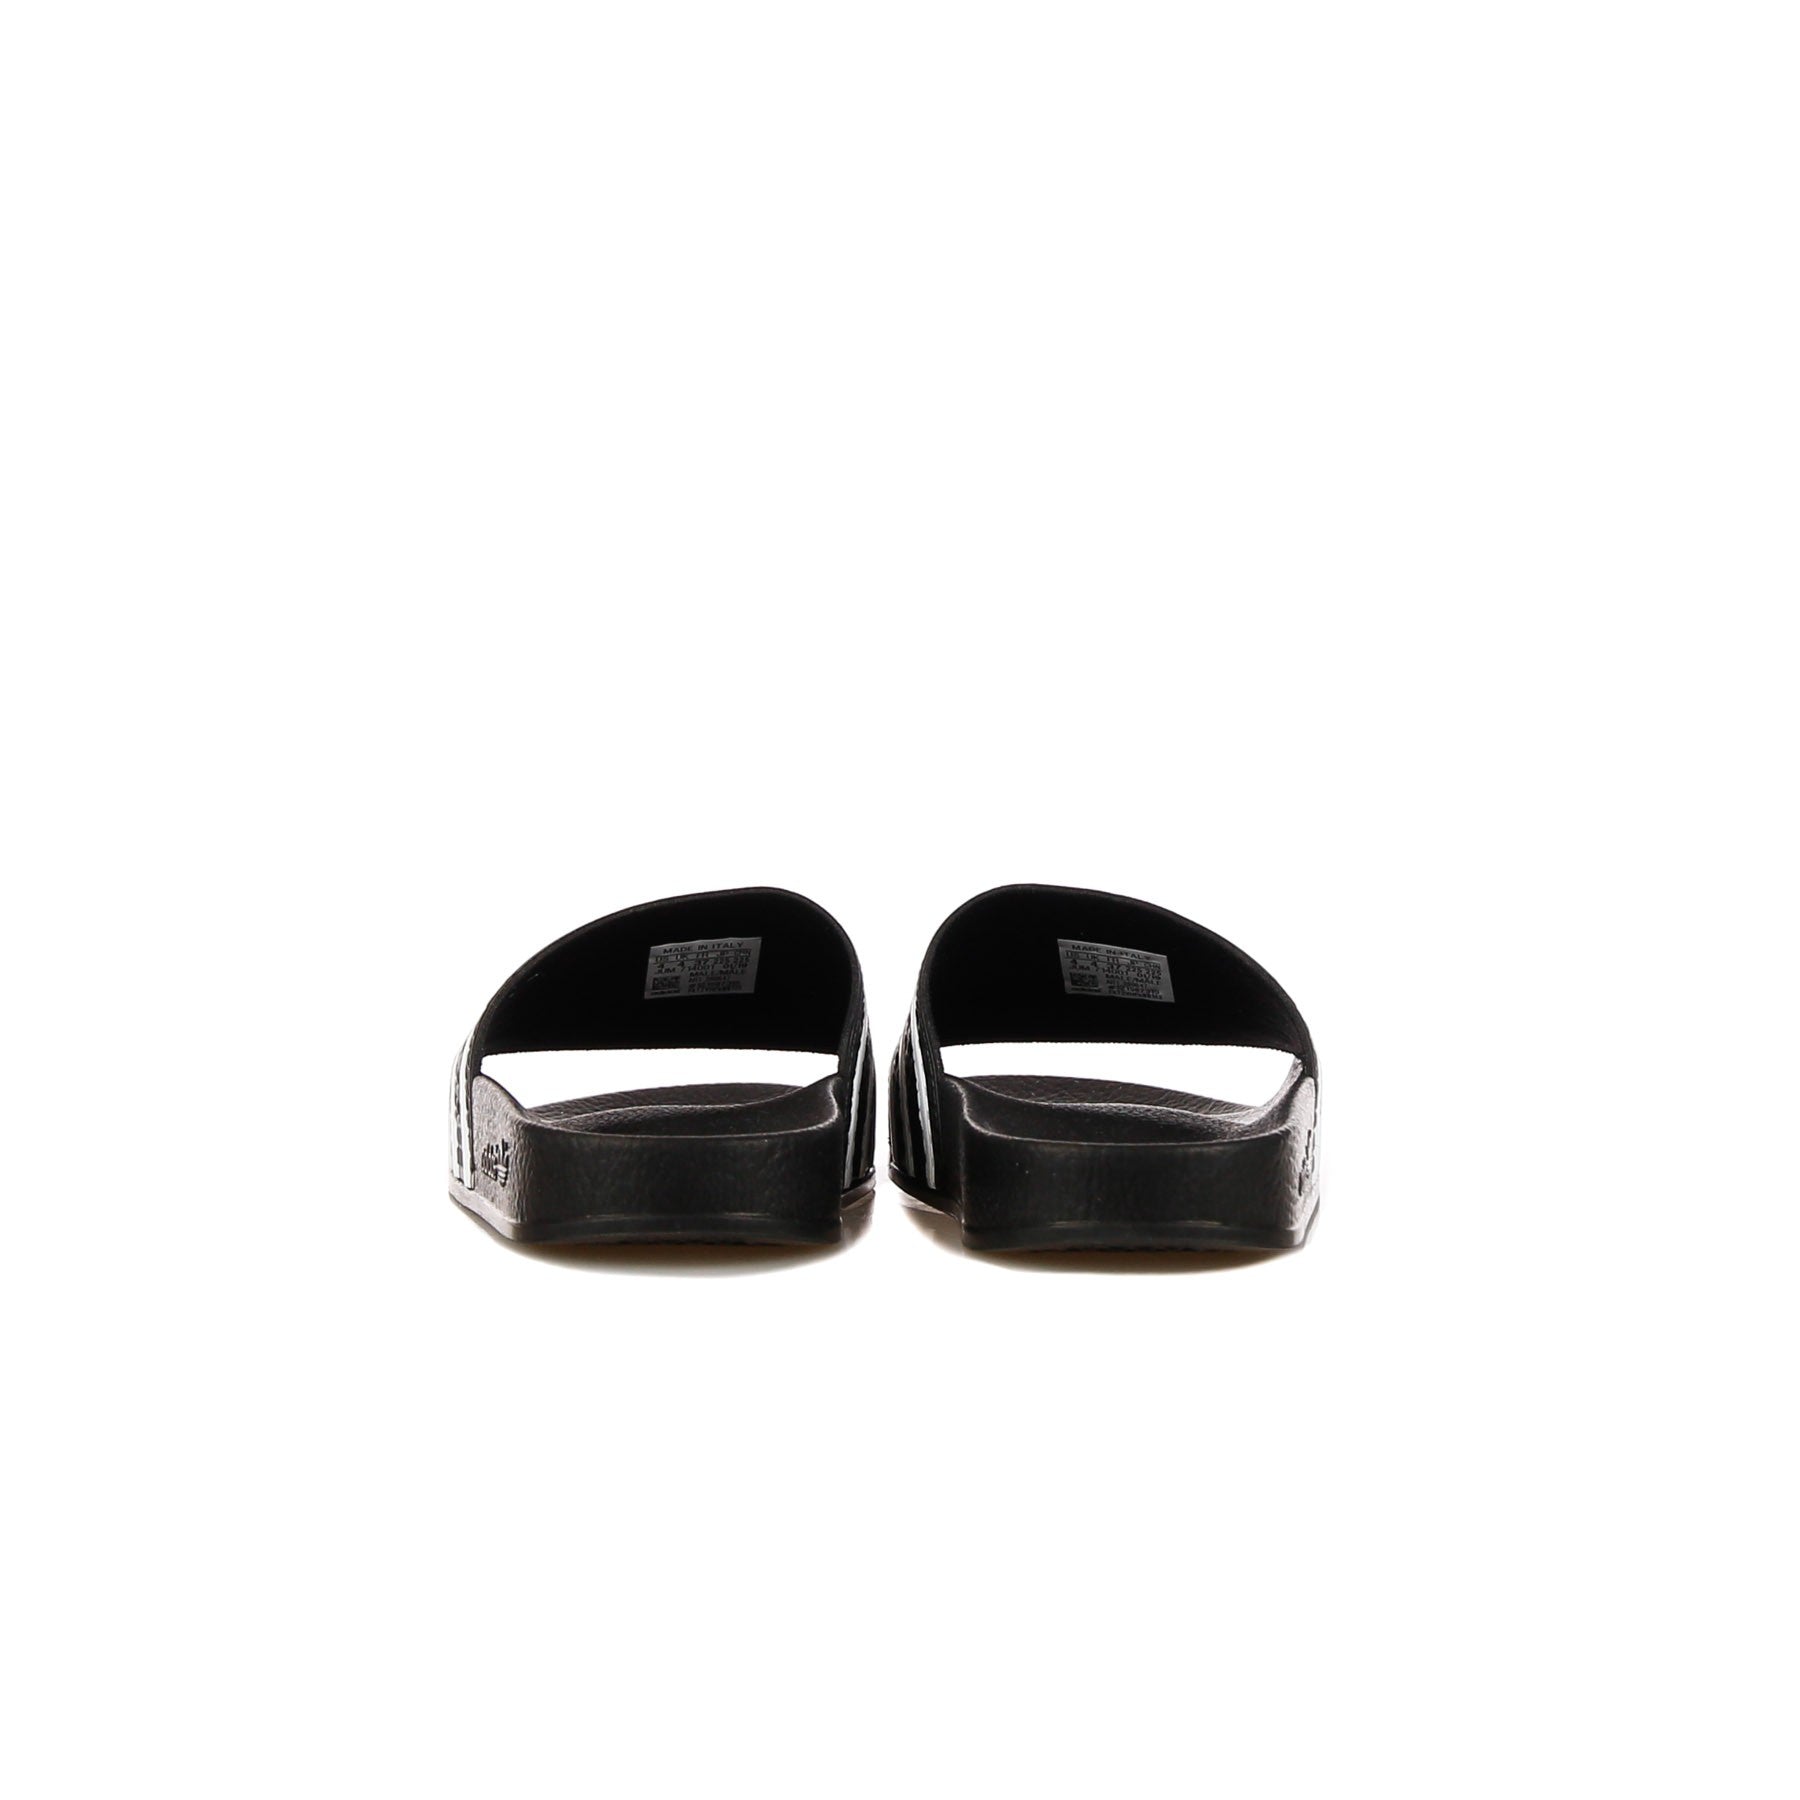 Adilette Men's Slippers Black/white